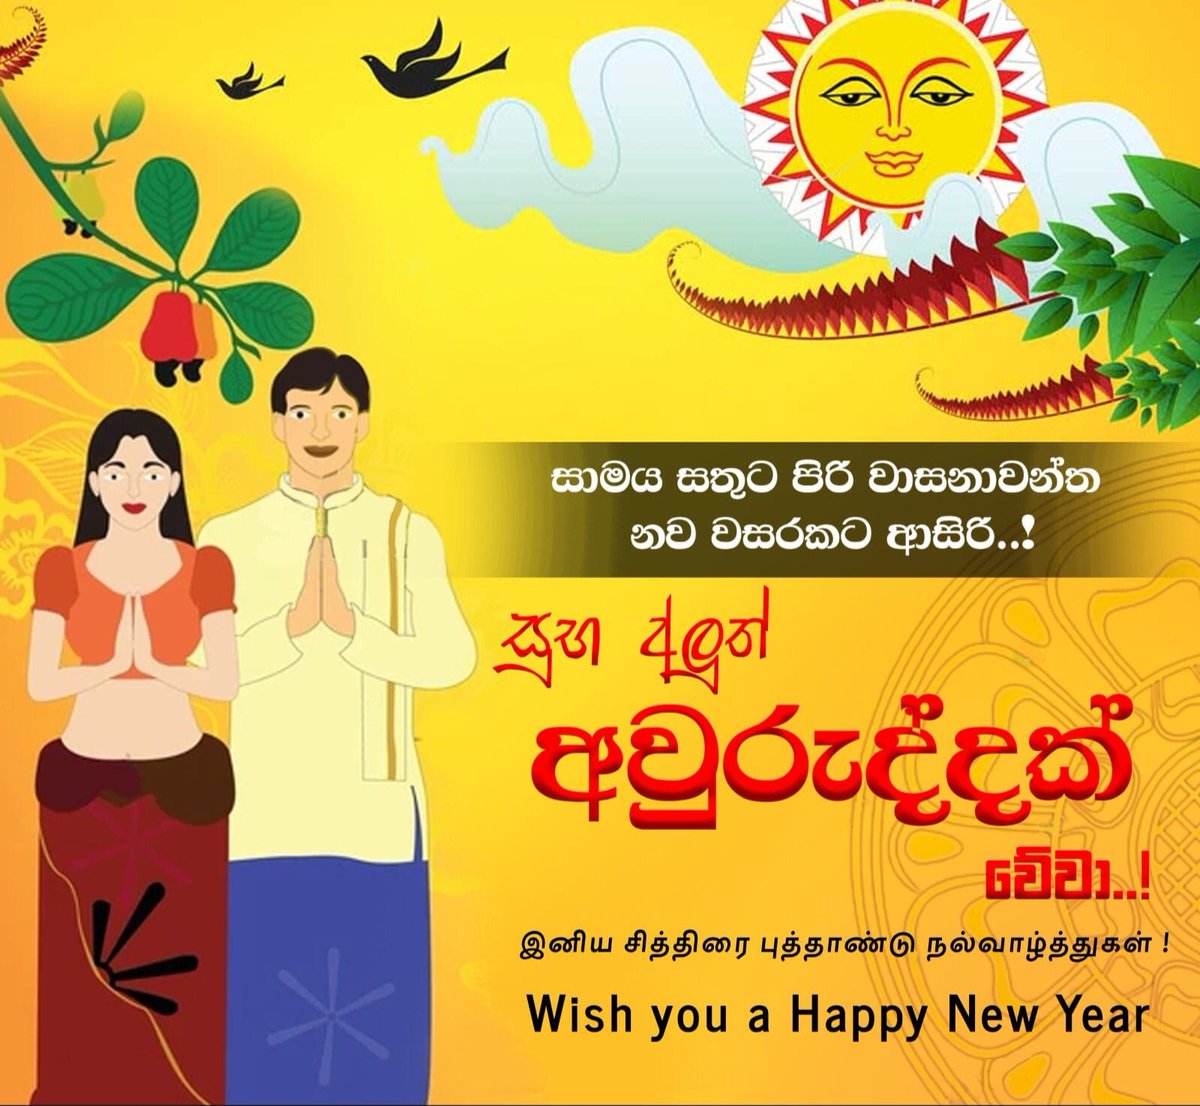 Happy new year guys <3

#HappyNewYear #SinhalaTamilNewYear #sinhalaandtamilnewyear #SriLankan